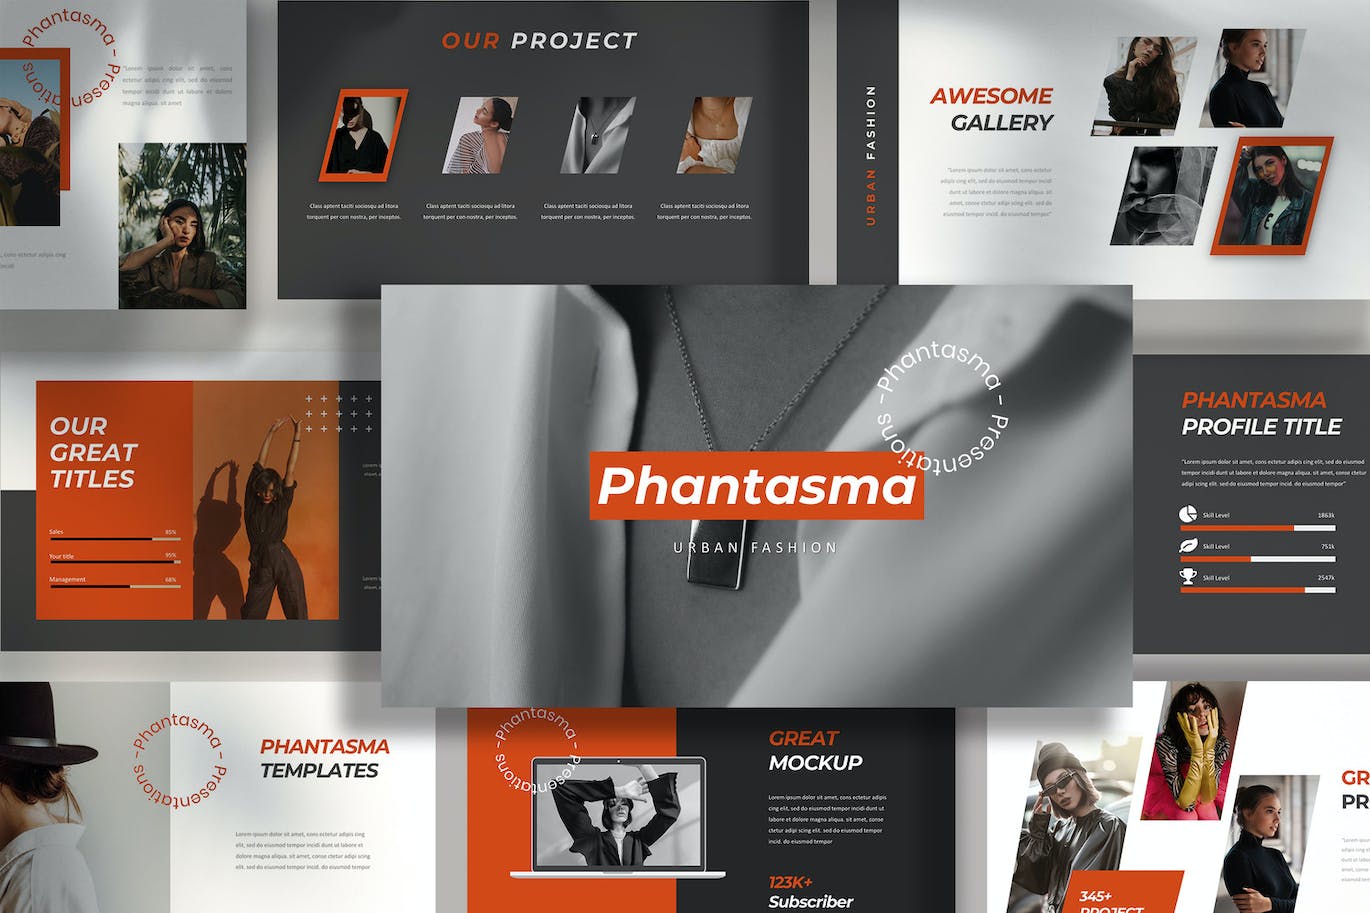 时尚都市项目推广PPT幻灯片设计模板 Phantasma – Powerpoint Template 幻灯图表 第1张